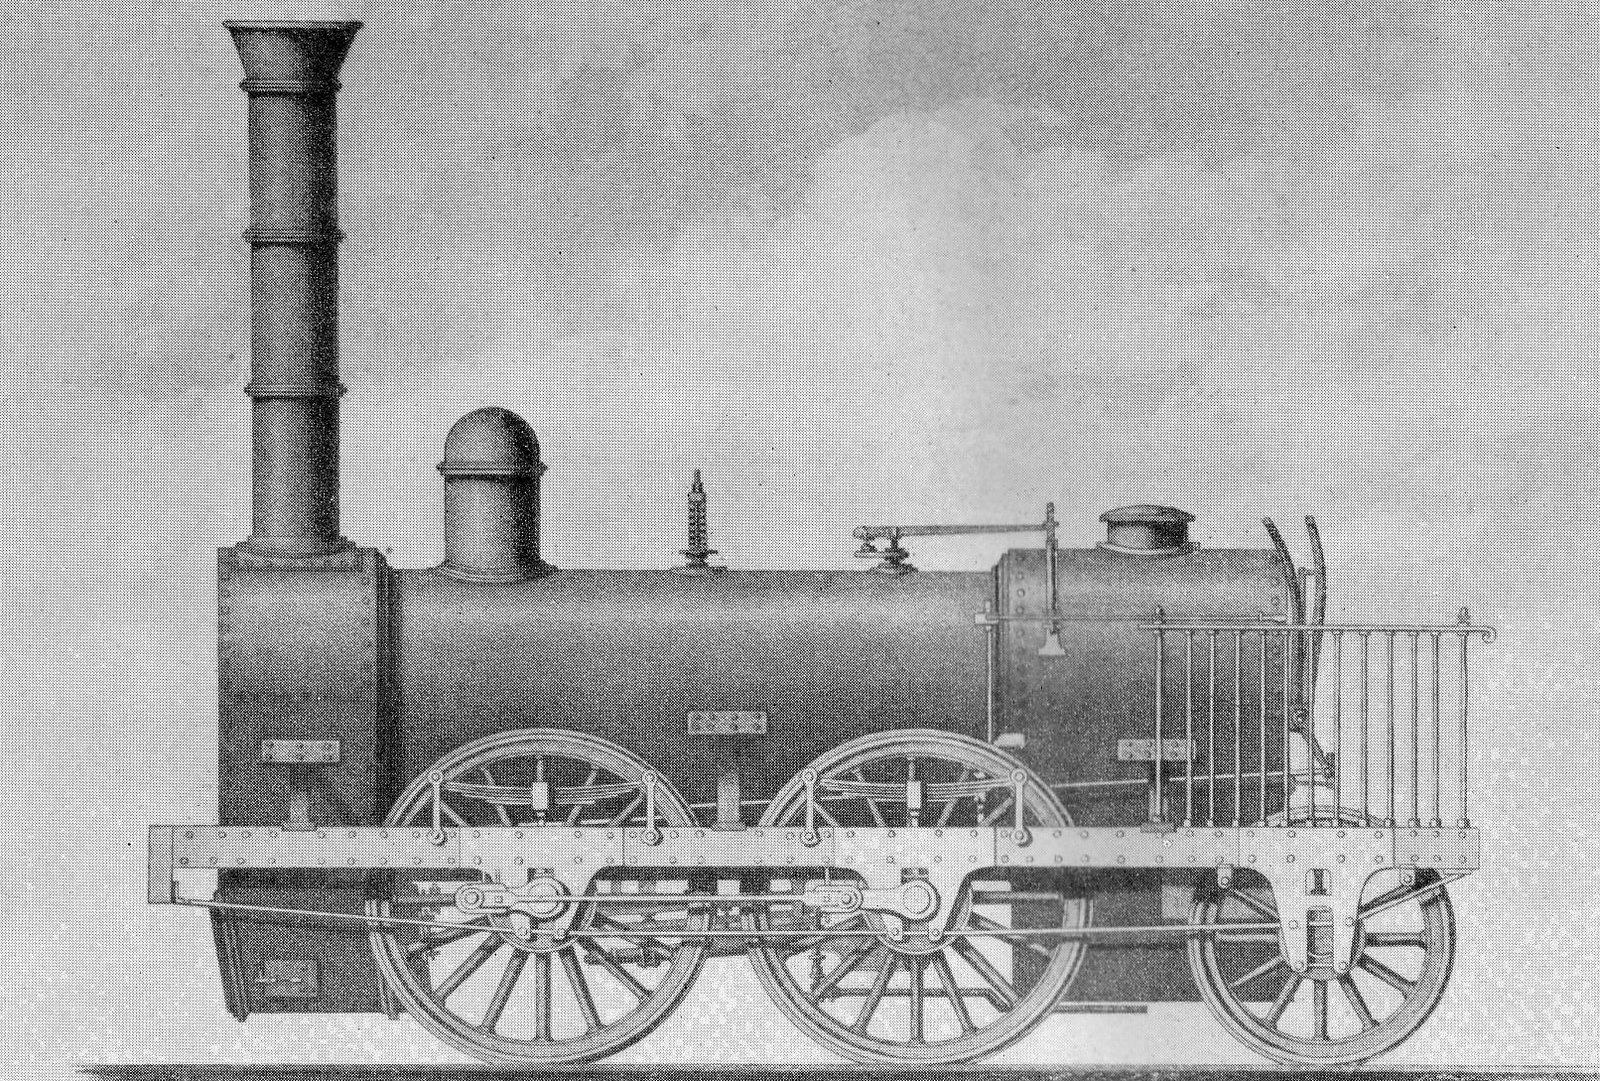 Stephenson 0-4-2 of 1834